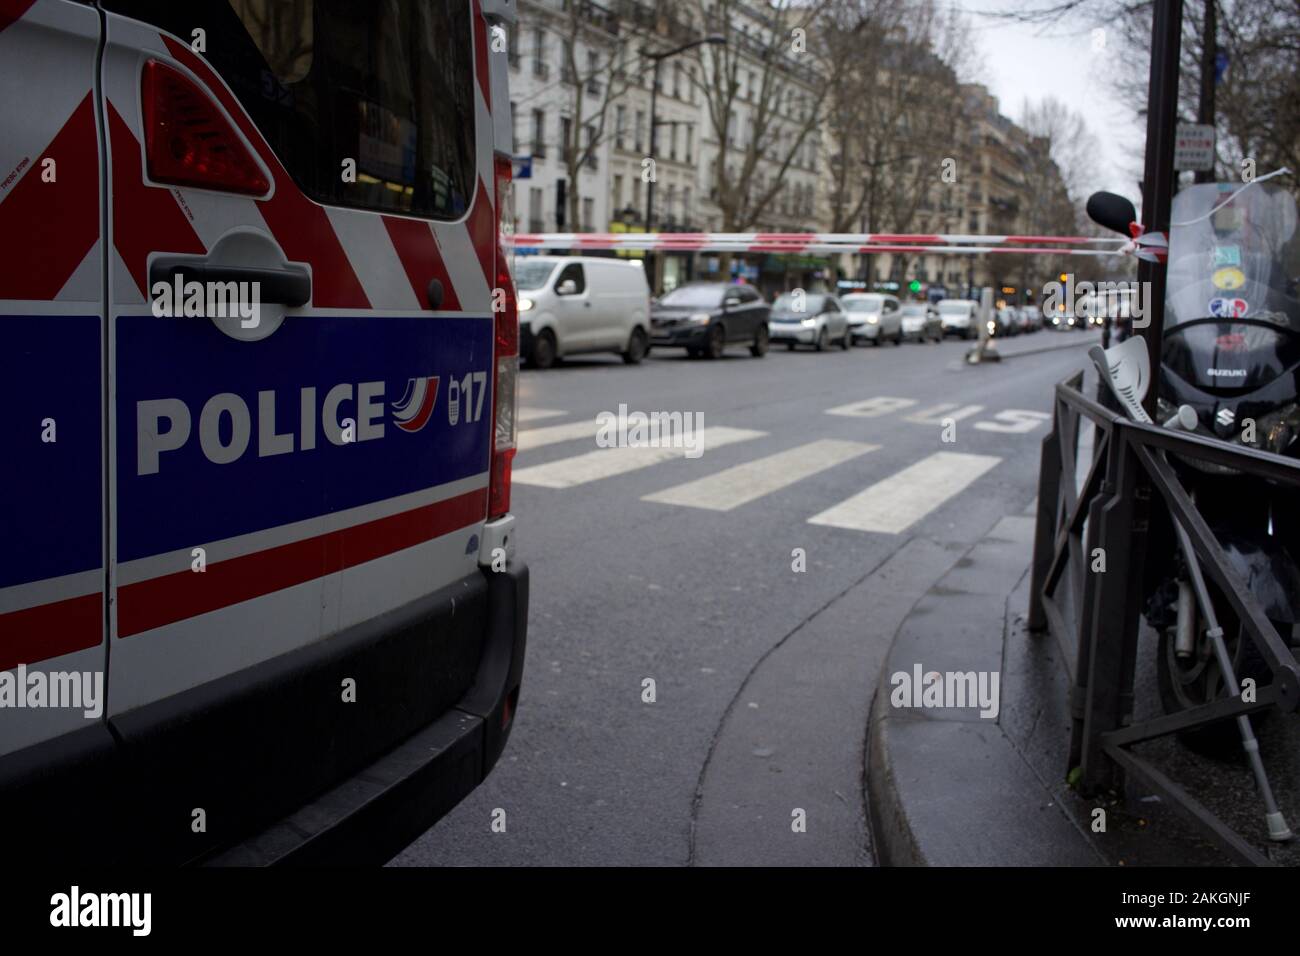 La policía francesa Van y cordón bloquear carretera al tráfico en previsión de protestas debido a propuestas de reformas de pensiones, el viaje se interrumpió durante la huelga (la grève), boulevard Barbès, 75018 París, Francia, el 9 de enero de 2020 Foto de stock